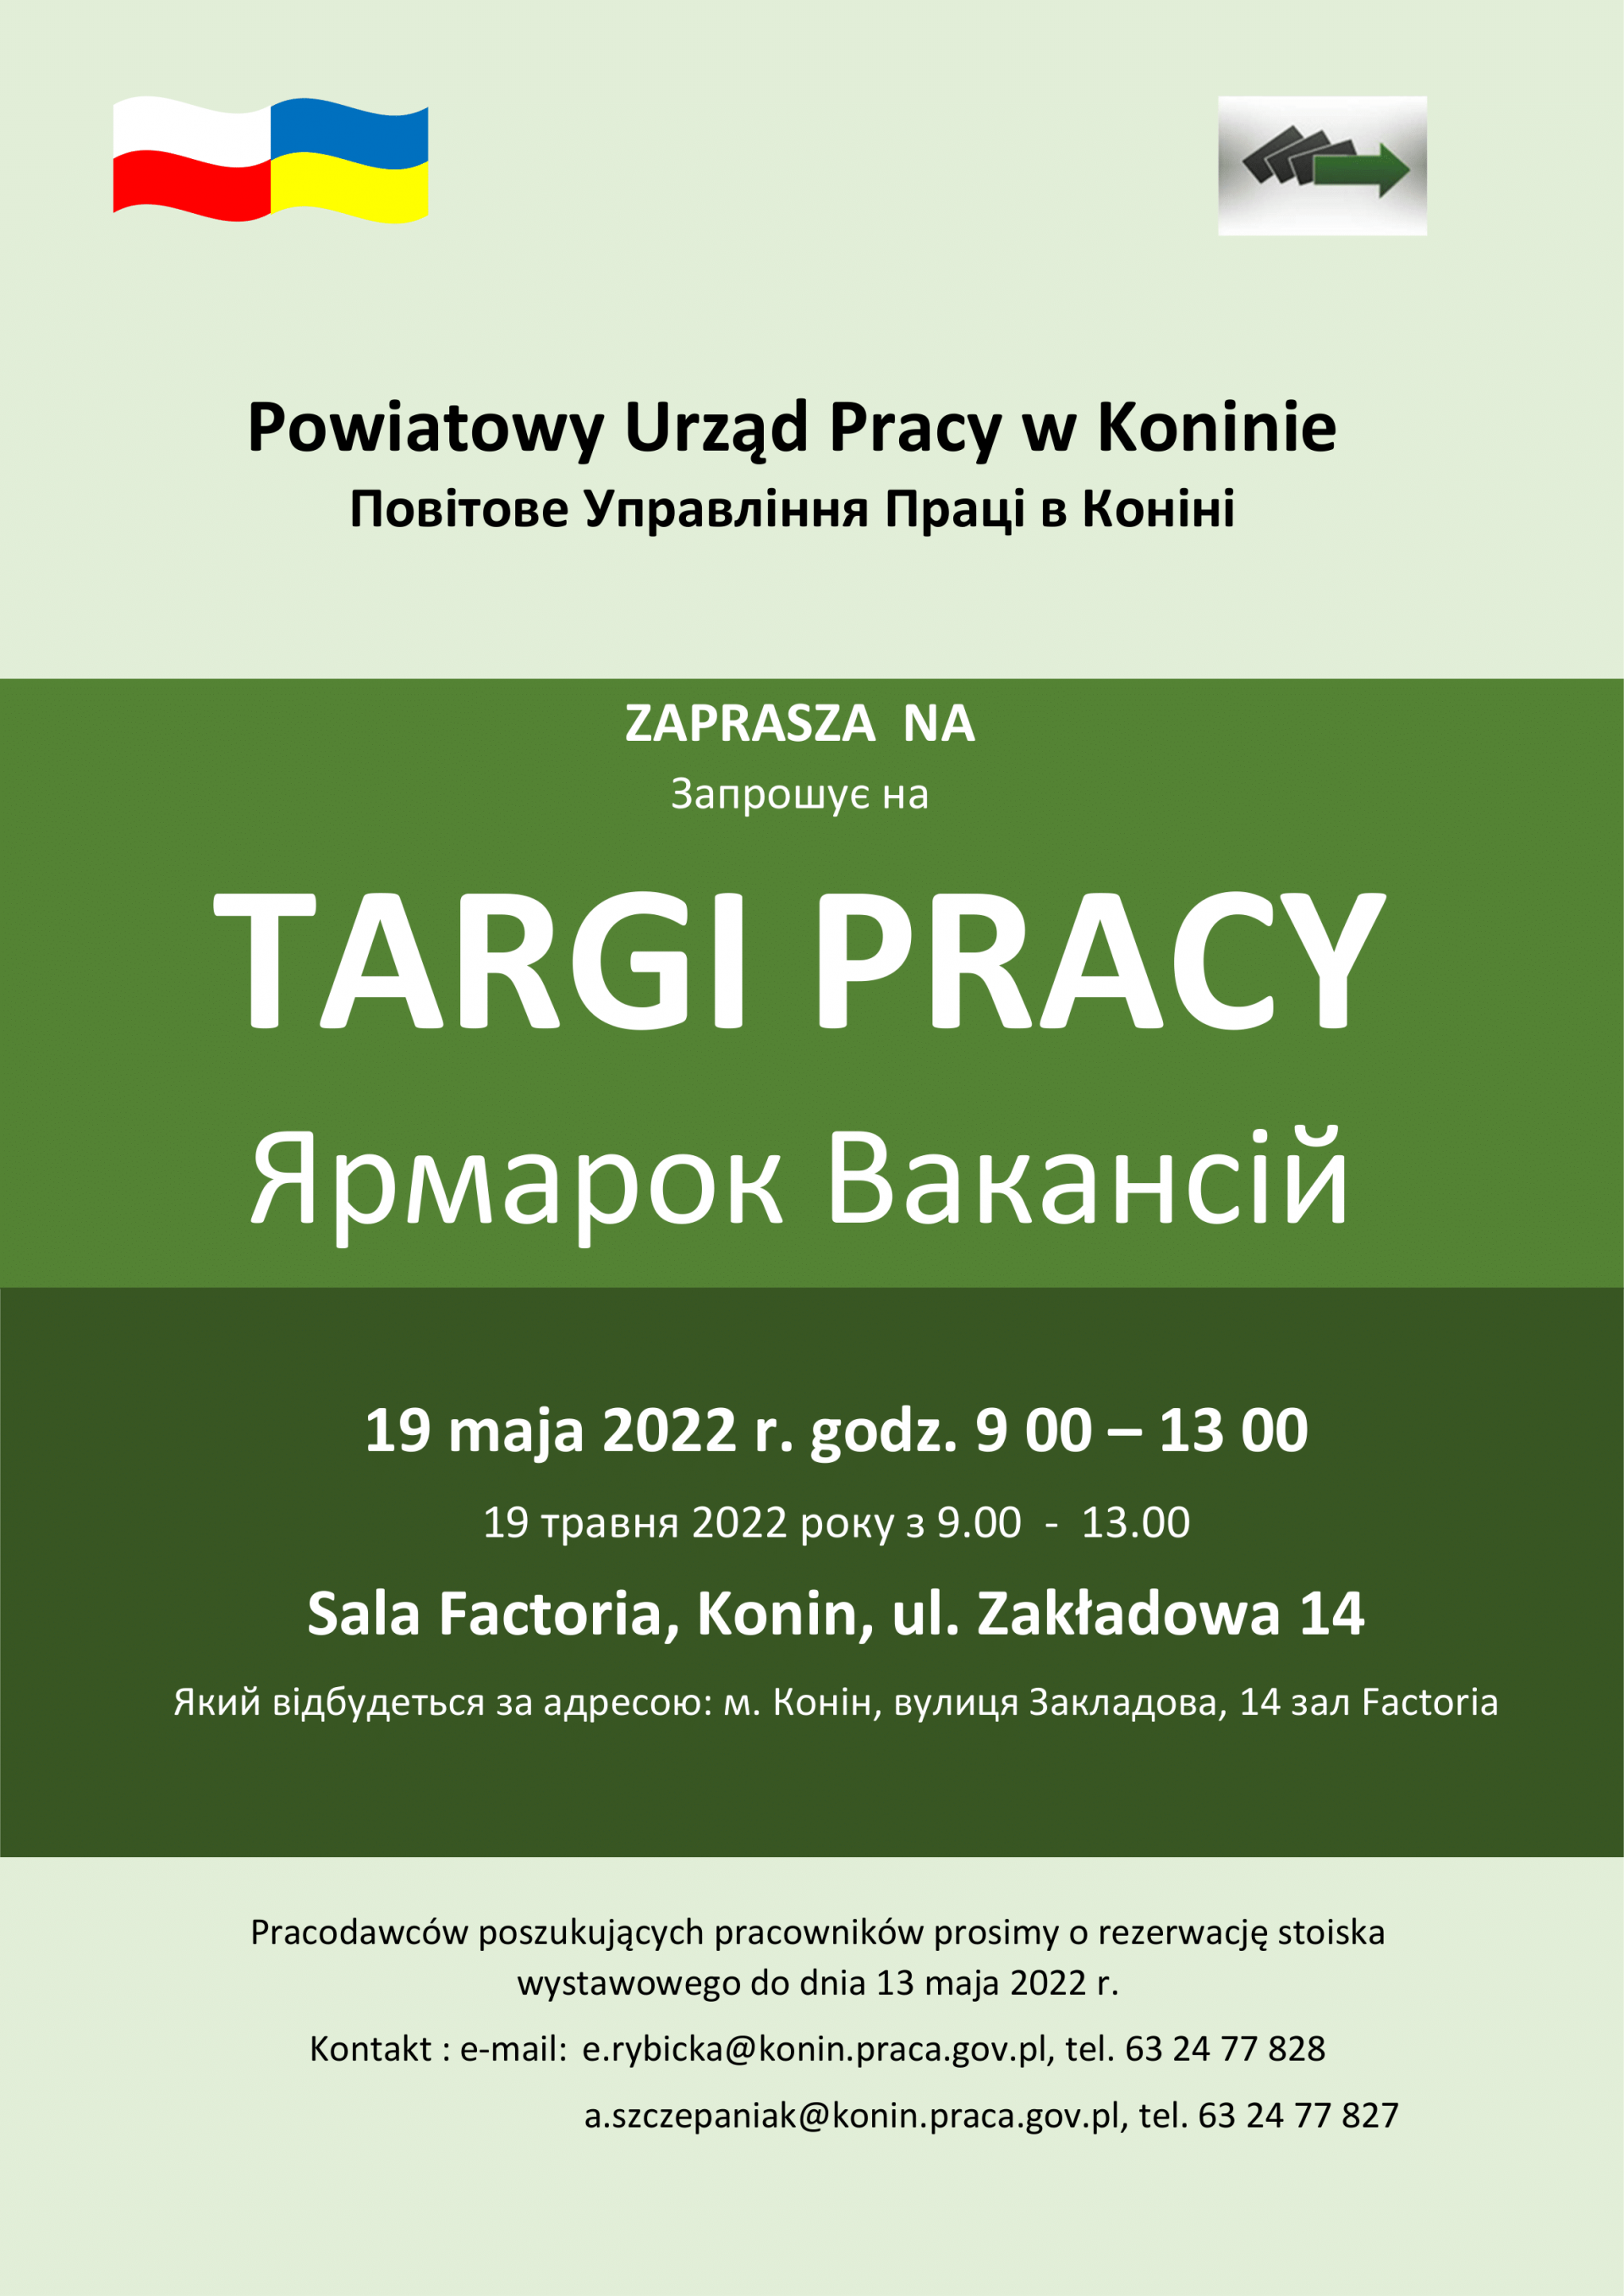 Plakat w języku polskim i ukraińskim promujący Targi Pracy organizowane przez Powiatowy Urząd Pracy 